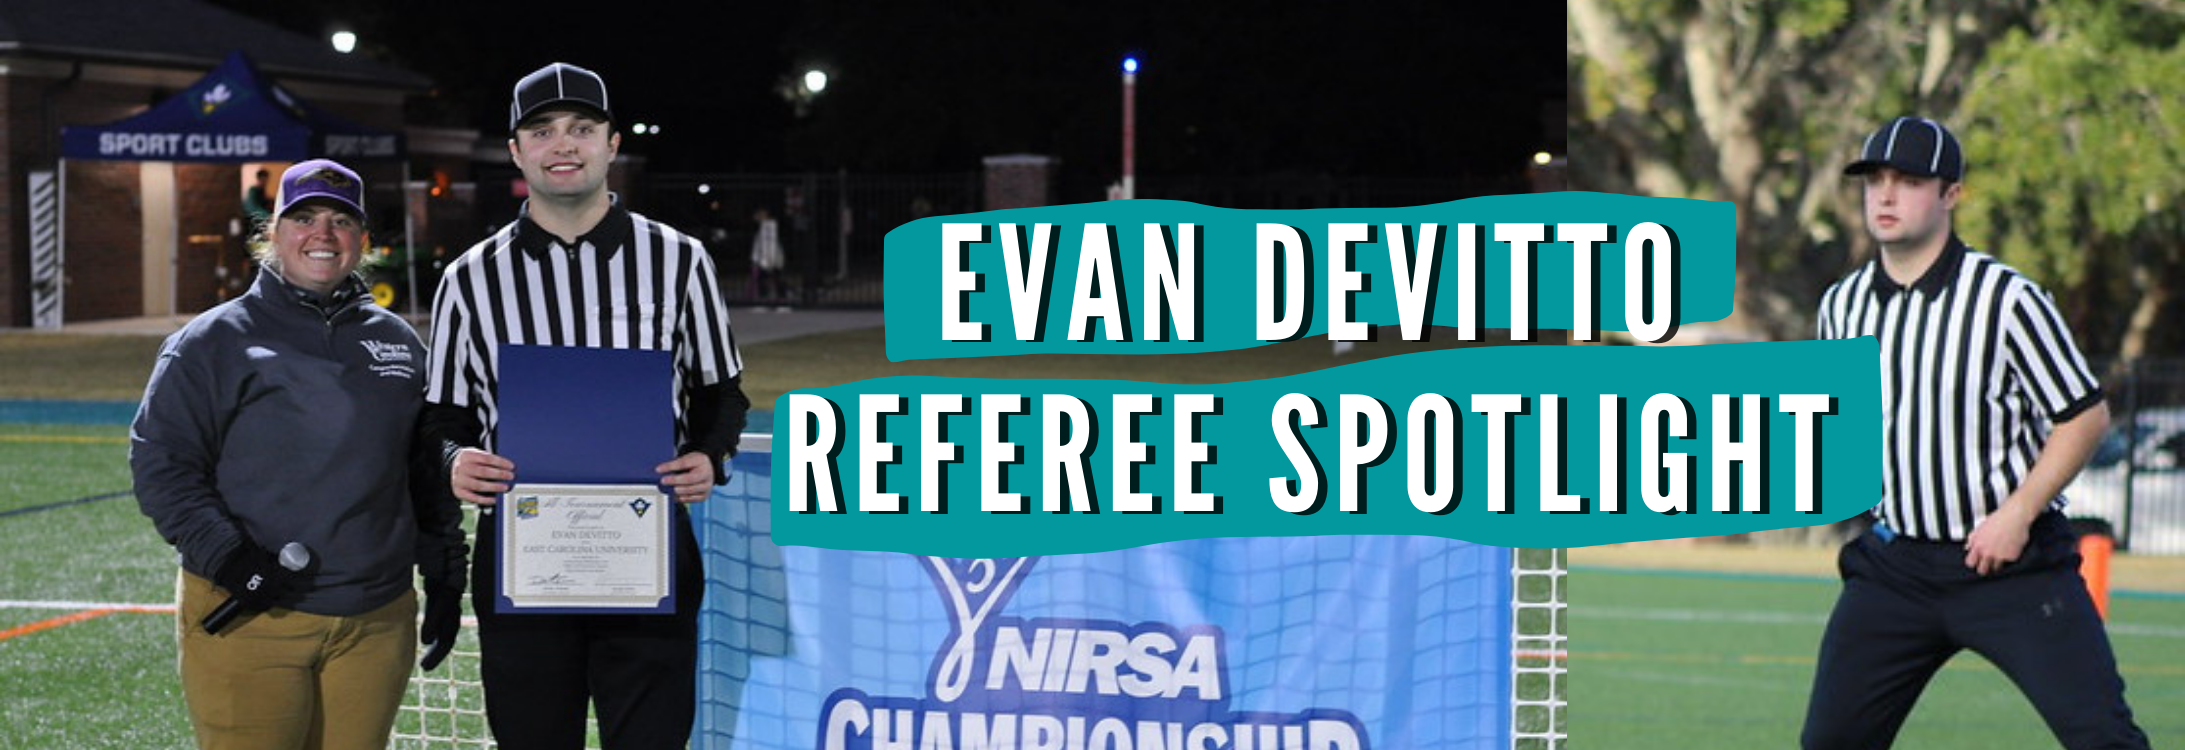 Evan Devitto - Referee Spotlight